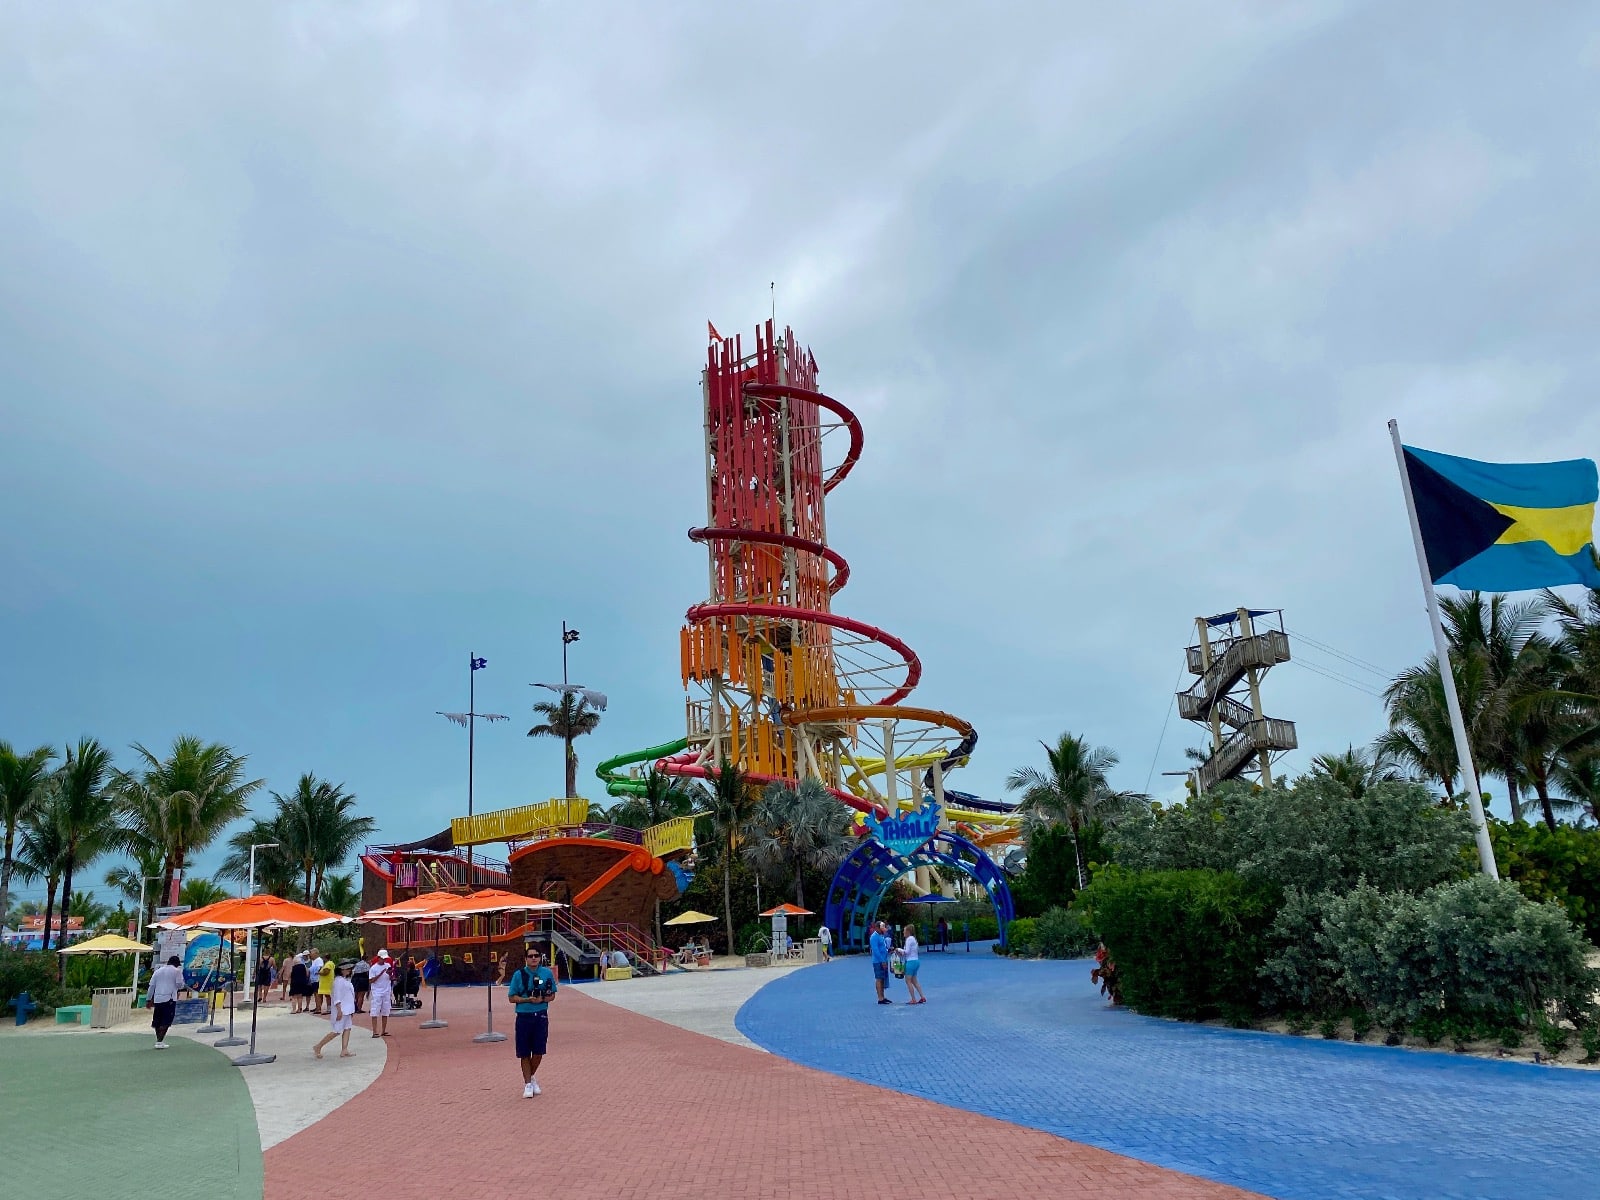 a colorful amusement park